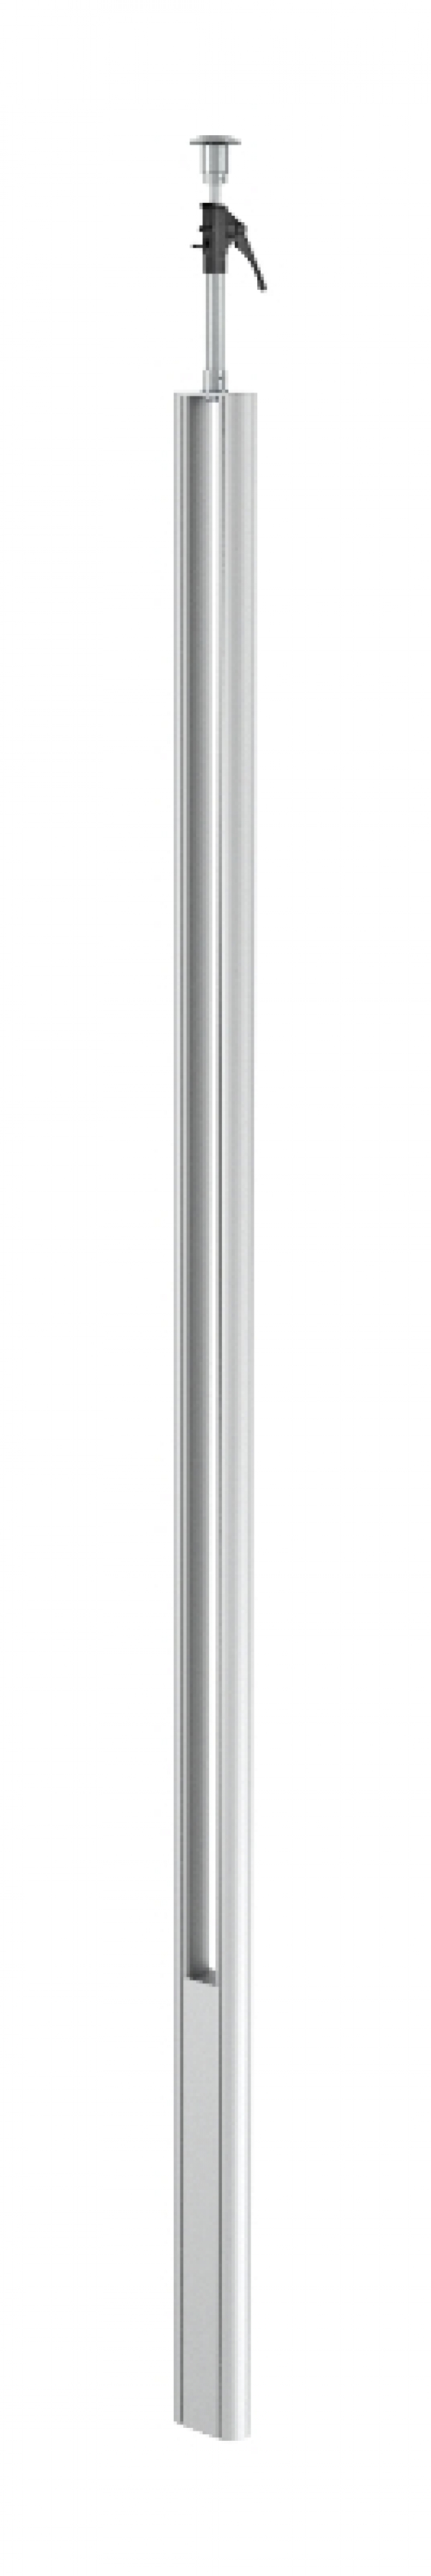 6288933 - OBO BETTERMANN Электромонтажная колонна 3,3-3,5 м 1-сторонняя 64x145x3000 мм (алюминий) (ISST70140EL).